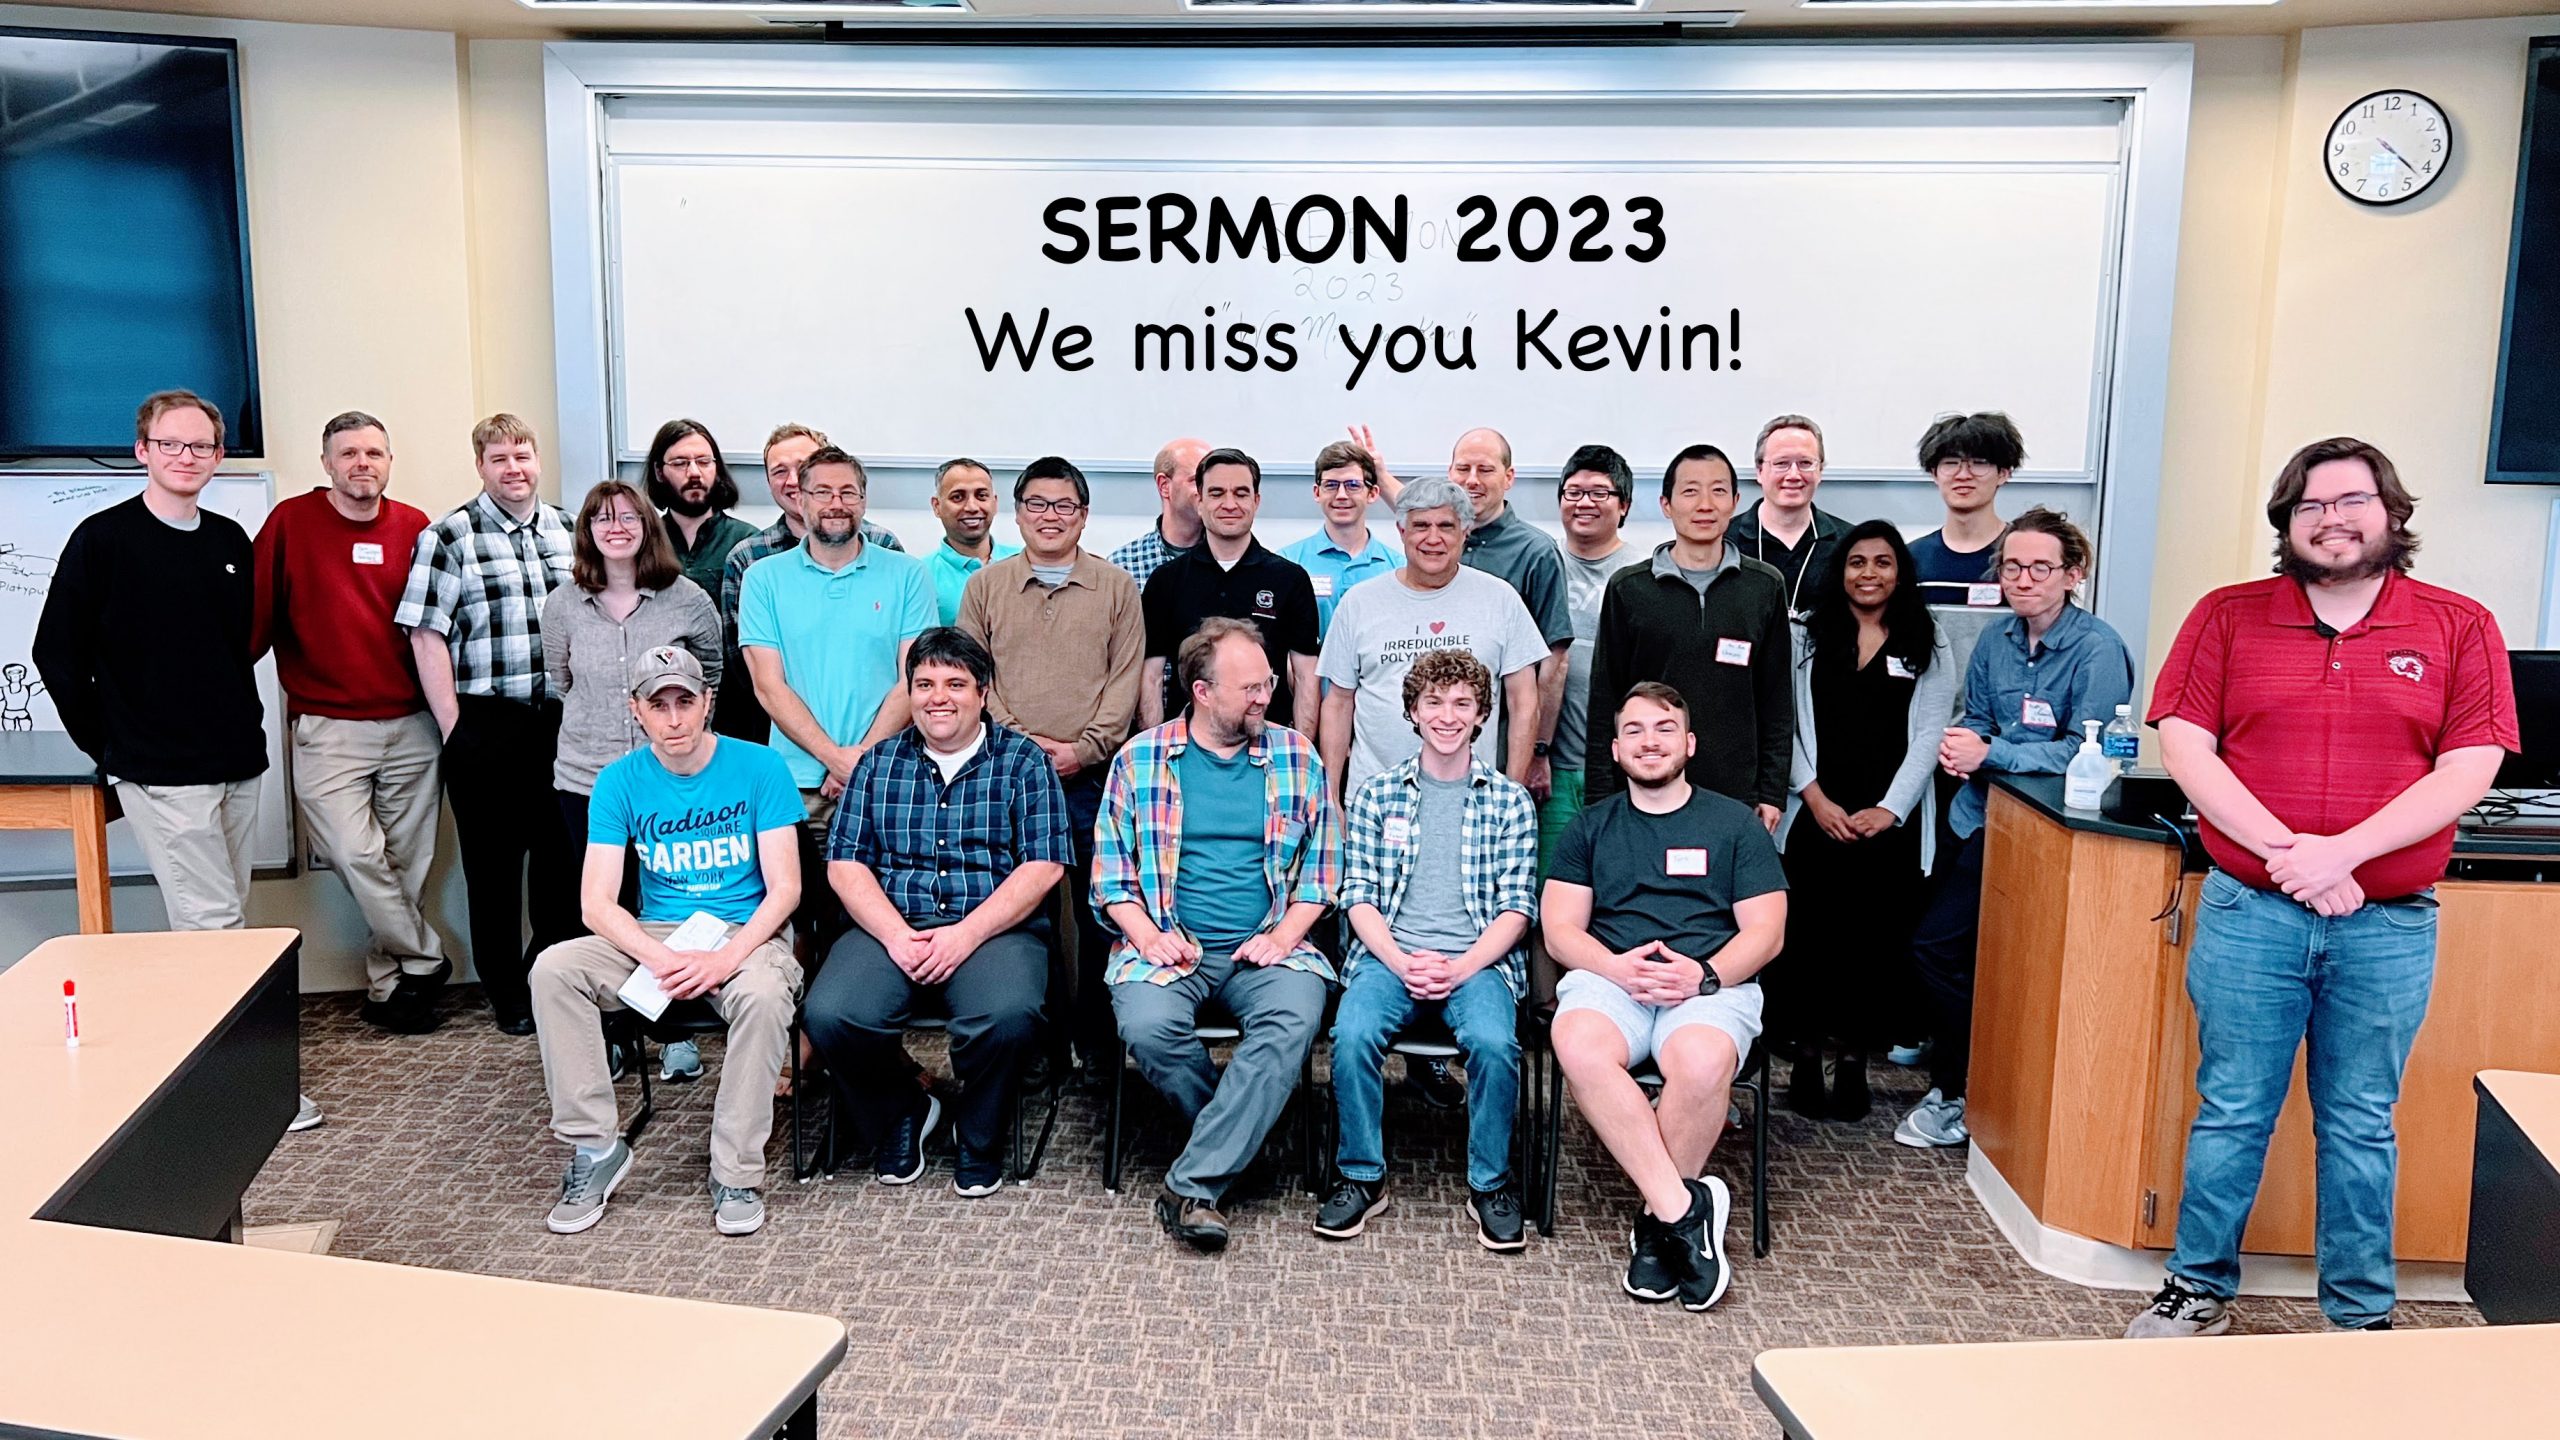 Sermon 2023 participants: We miss you Kevin !